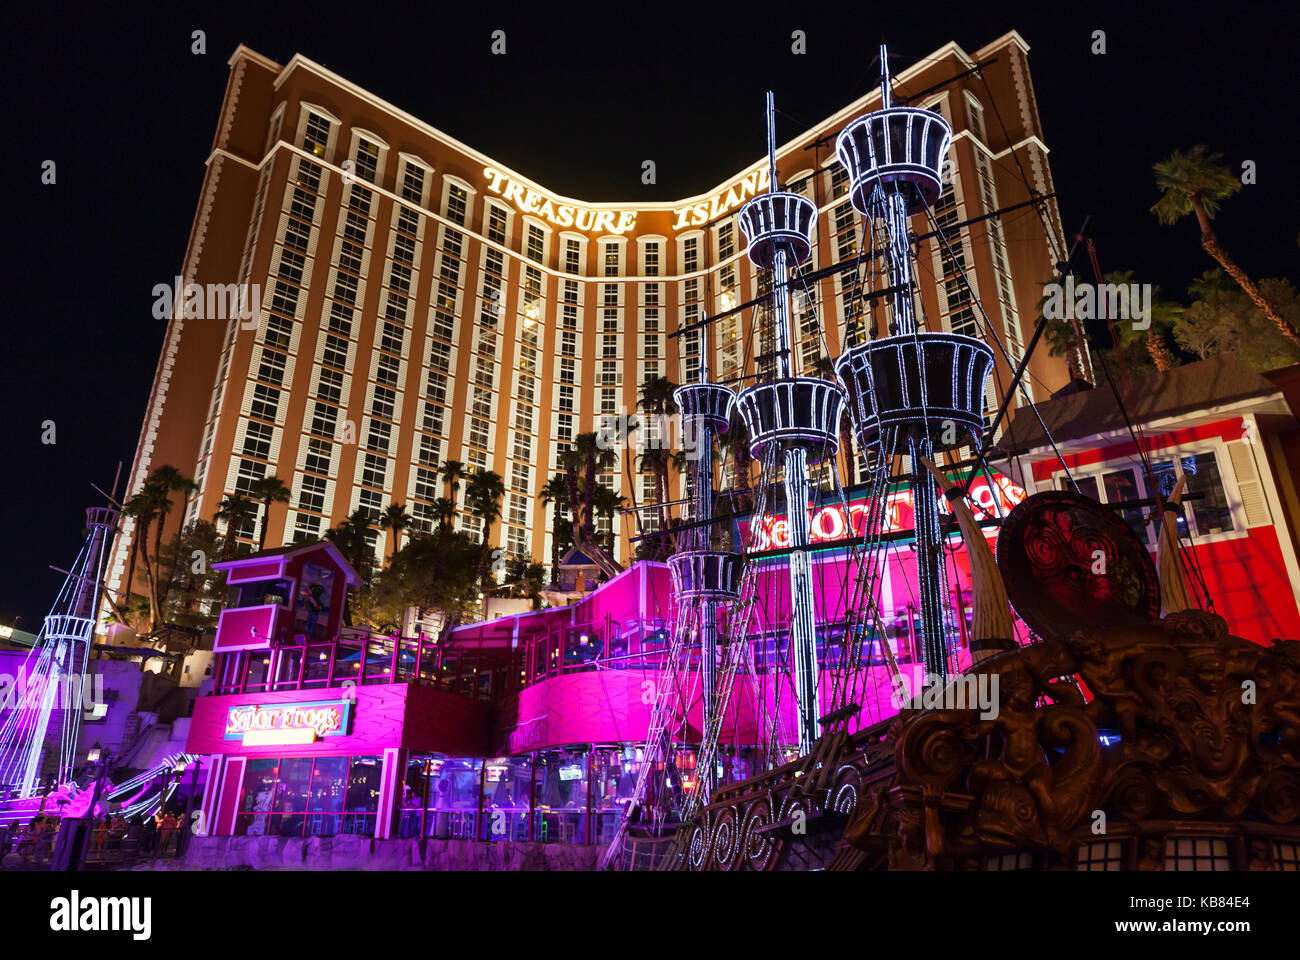 Eine nächtliche Ansicht der Treasure Island Hotel and Casino in Las Vegas Blvd Las Vegas, Nevada. Stockfoto